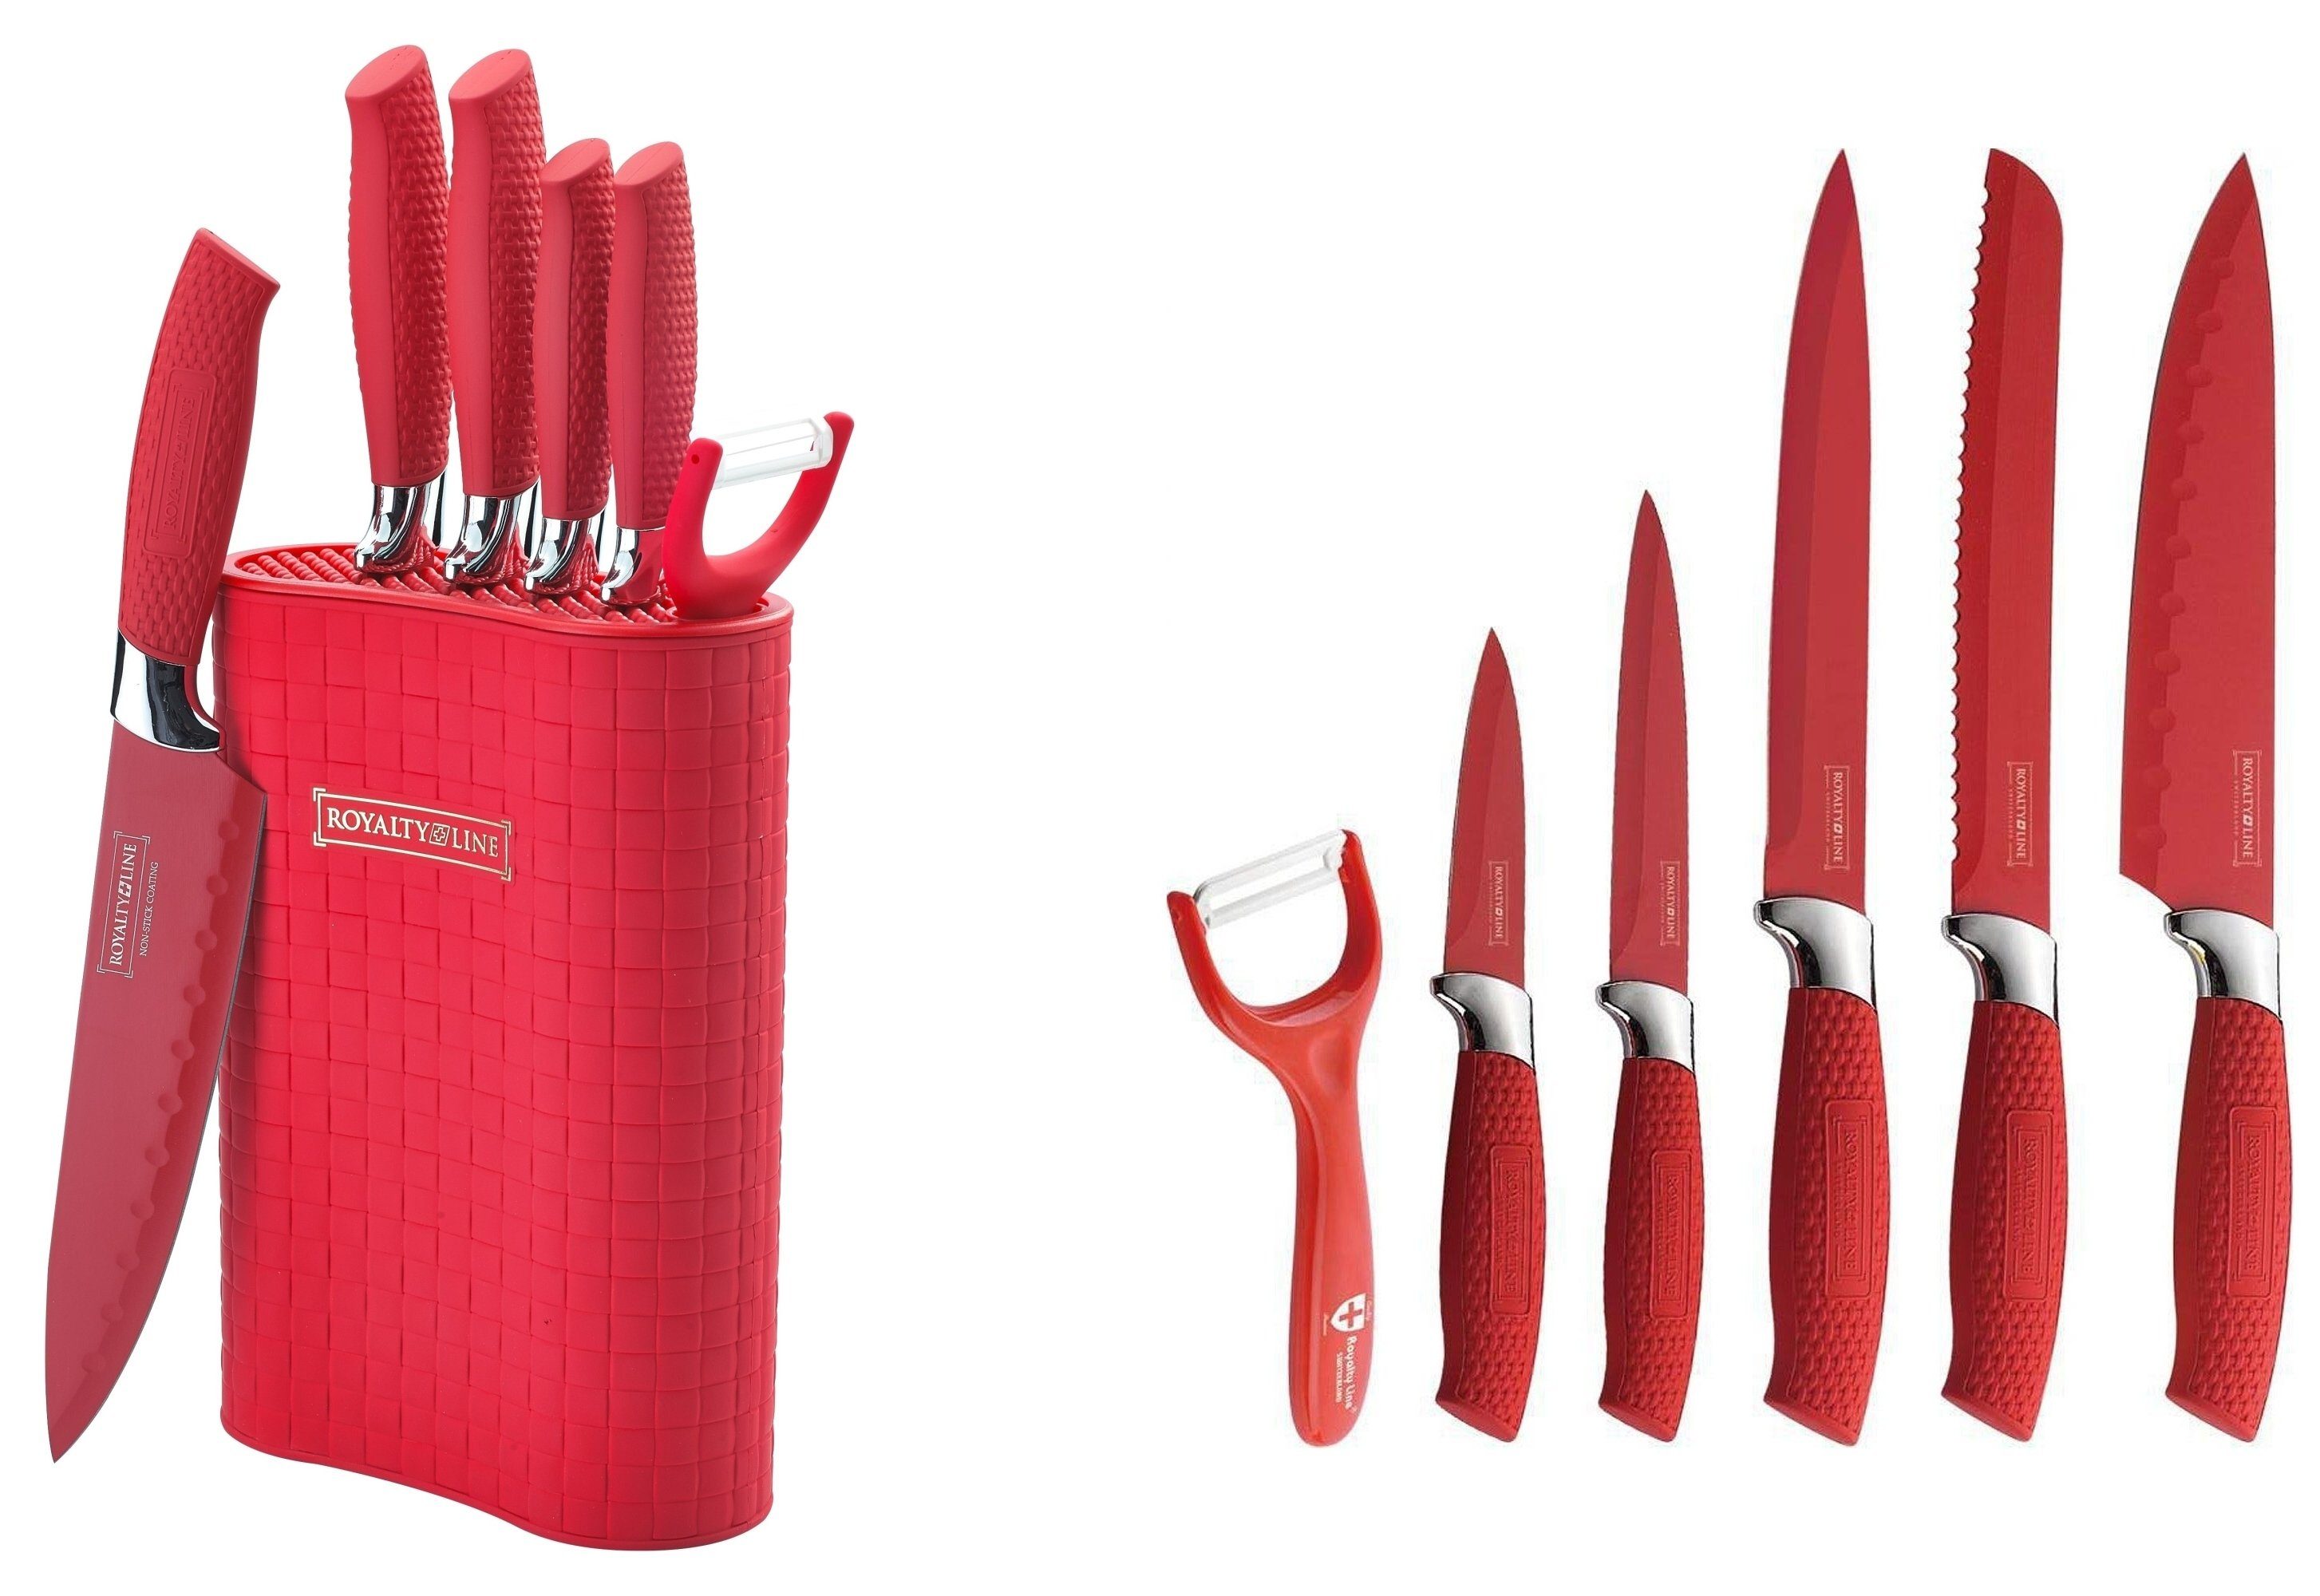 Markenwarenshop-Style Messer-Set Messer Kochmesser Messerständer Messerset  7-tlg. Royalty Line rot